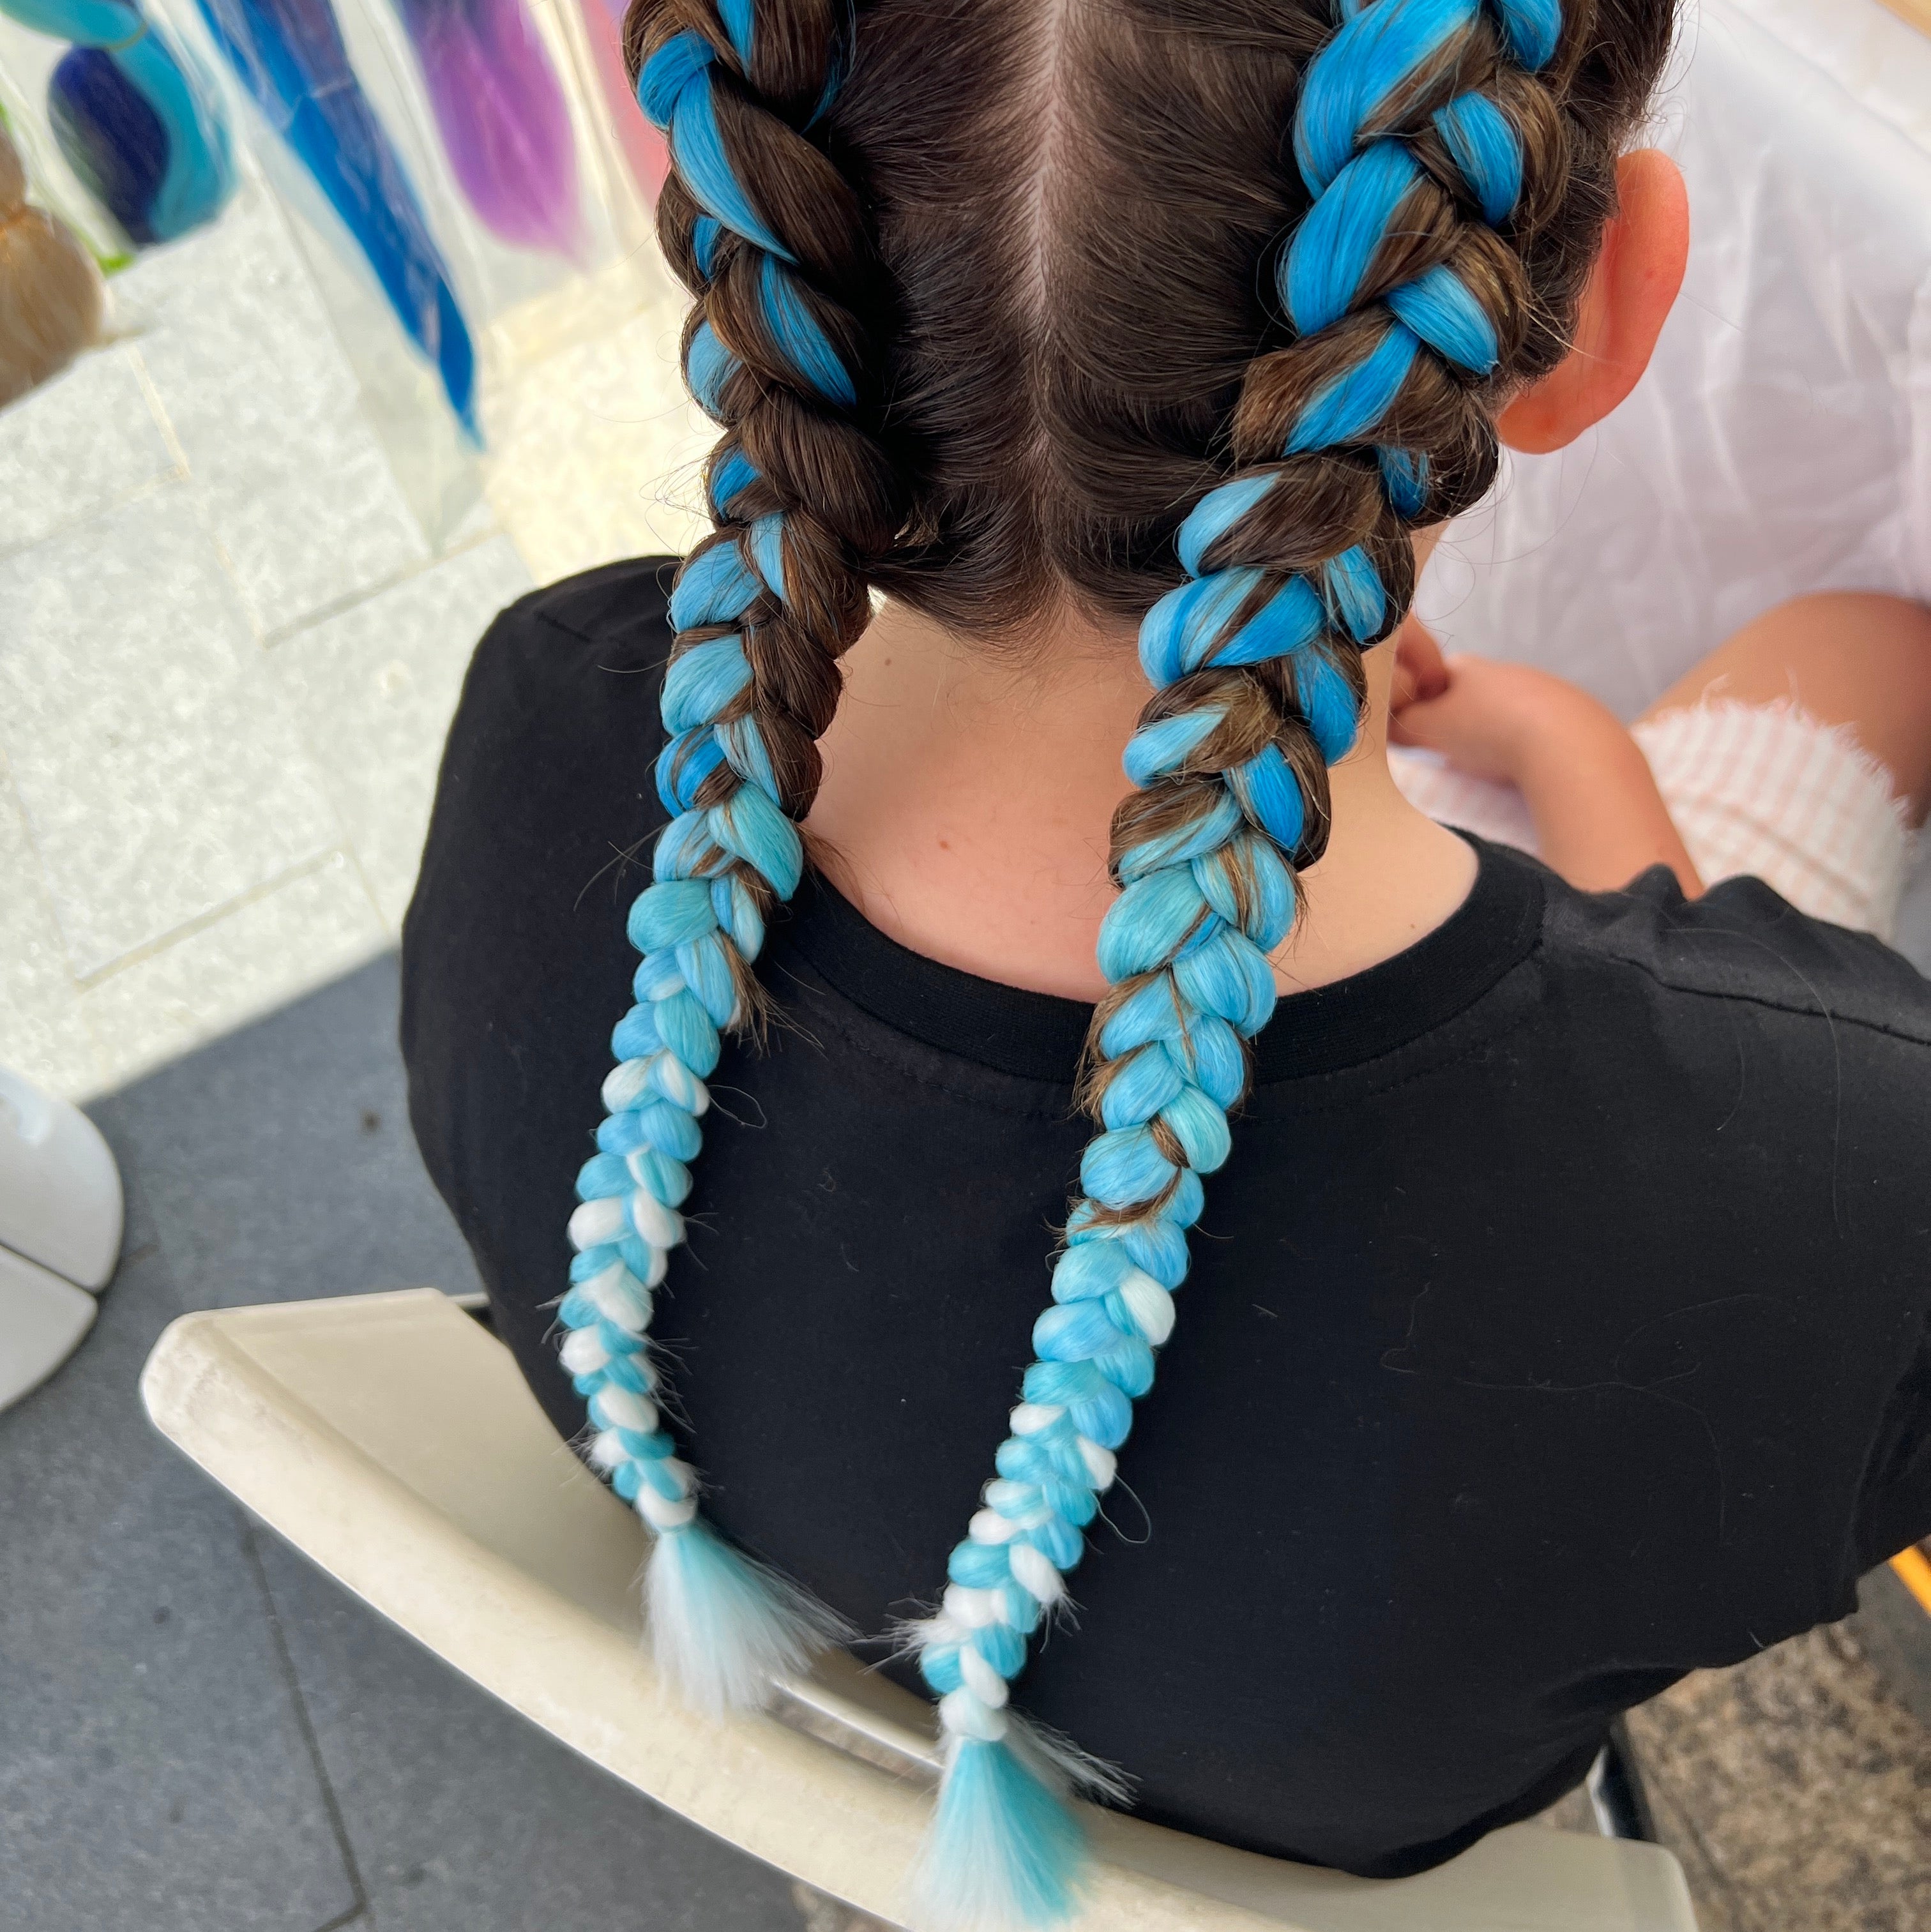 Jumbo hair braid in blue, light Blue, light spearmint and white